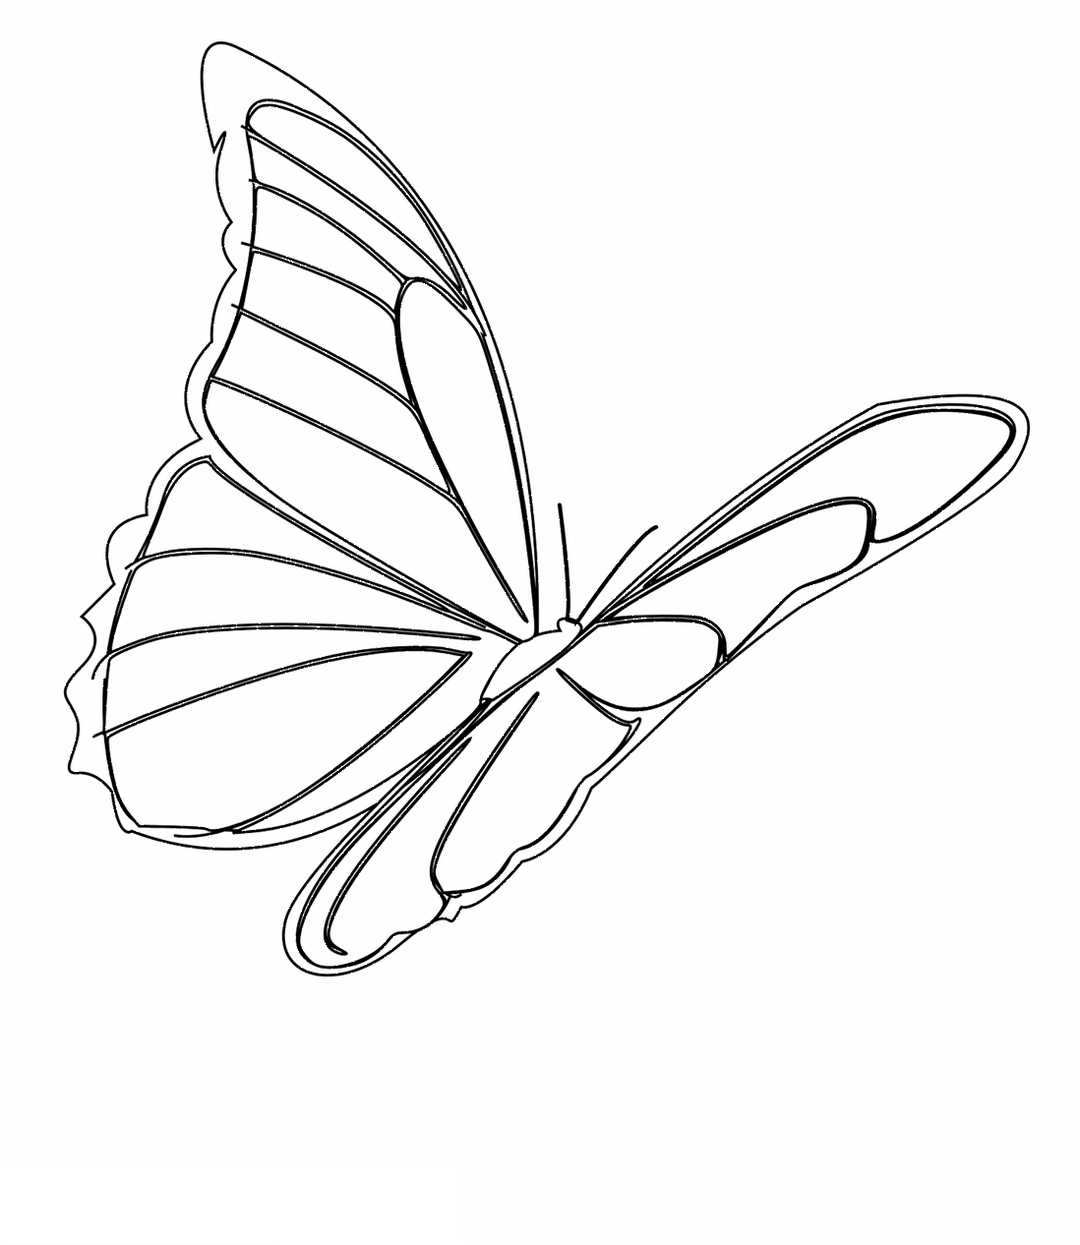 Hướng dẫn vẽ hình vẽ con bướm xinh cho người mới bắt đầu